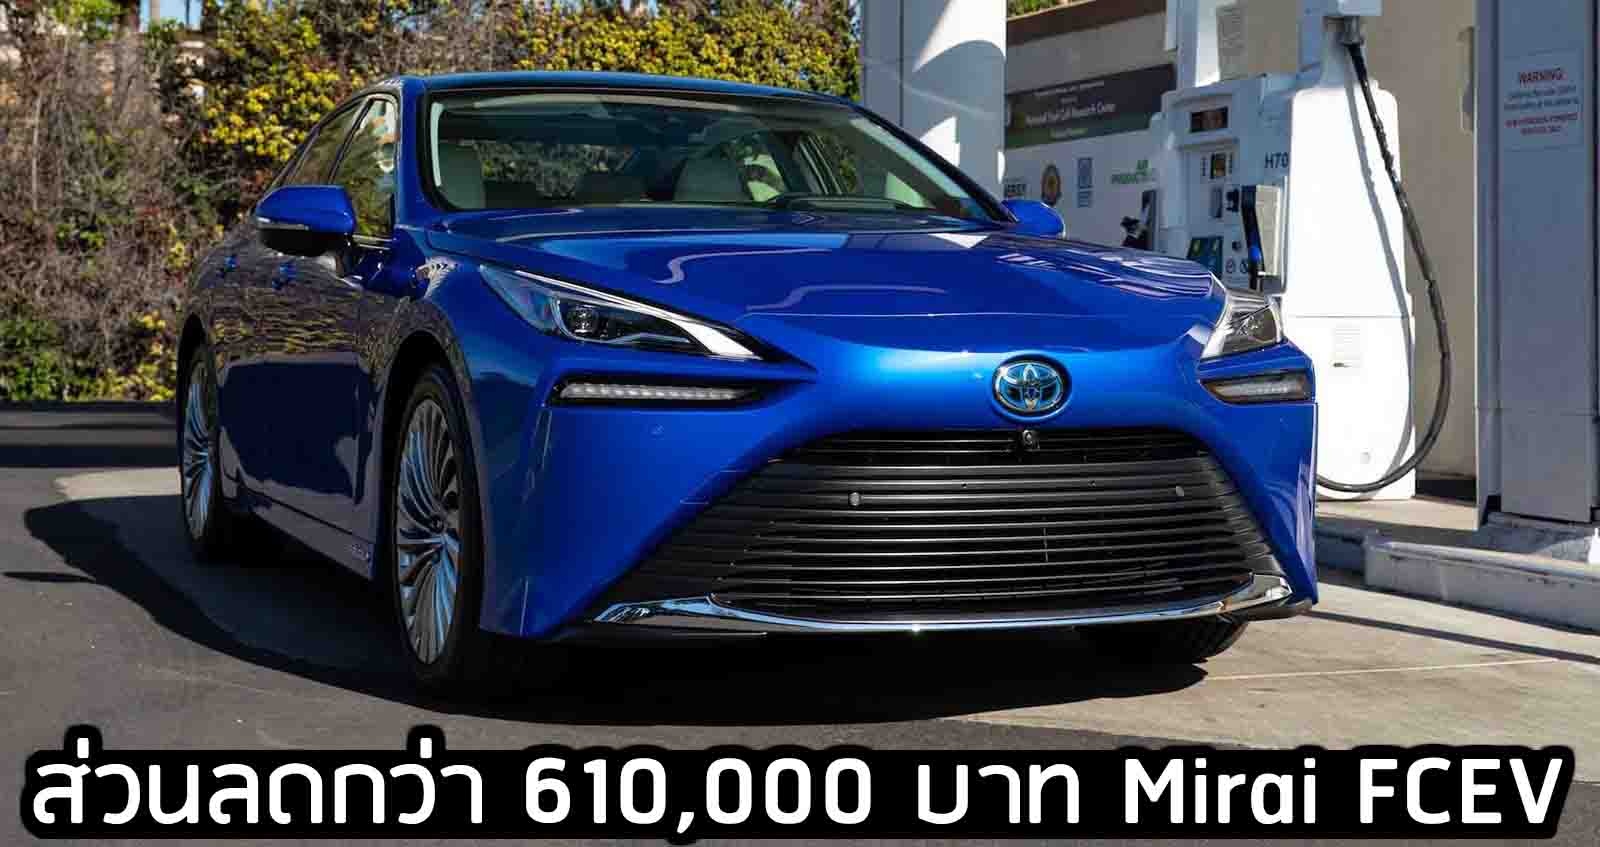 ส่วนลดกว่า 610,000 บาท Toyota Mirai FCEV ในสหรัฐฯ